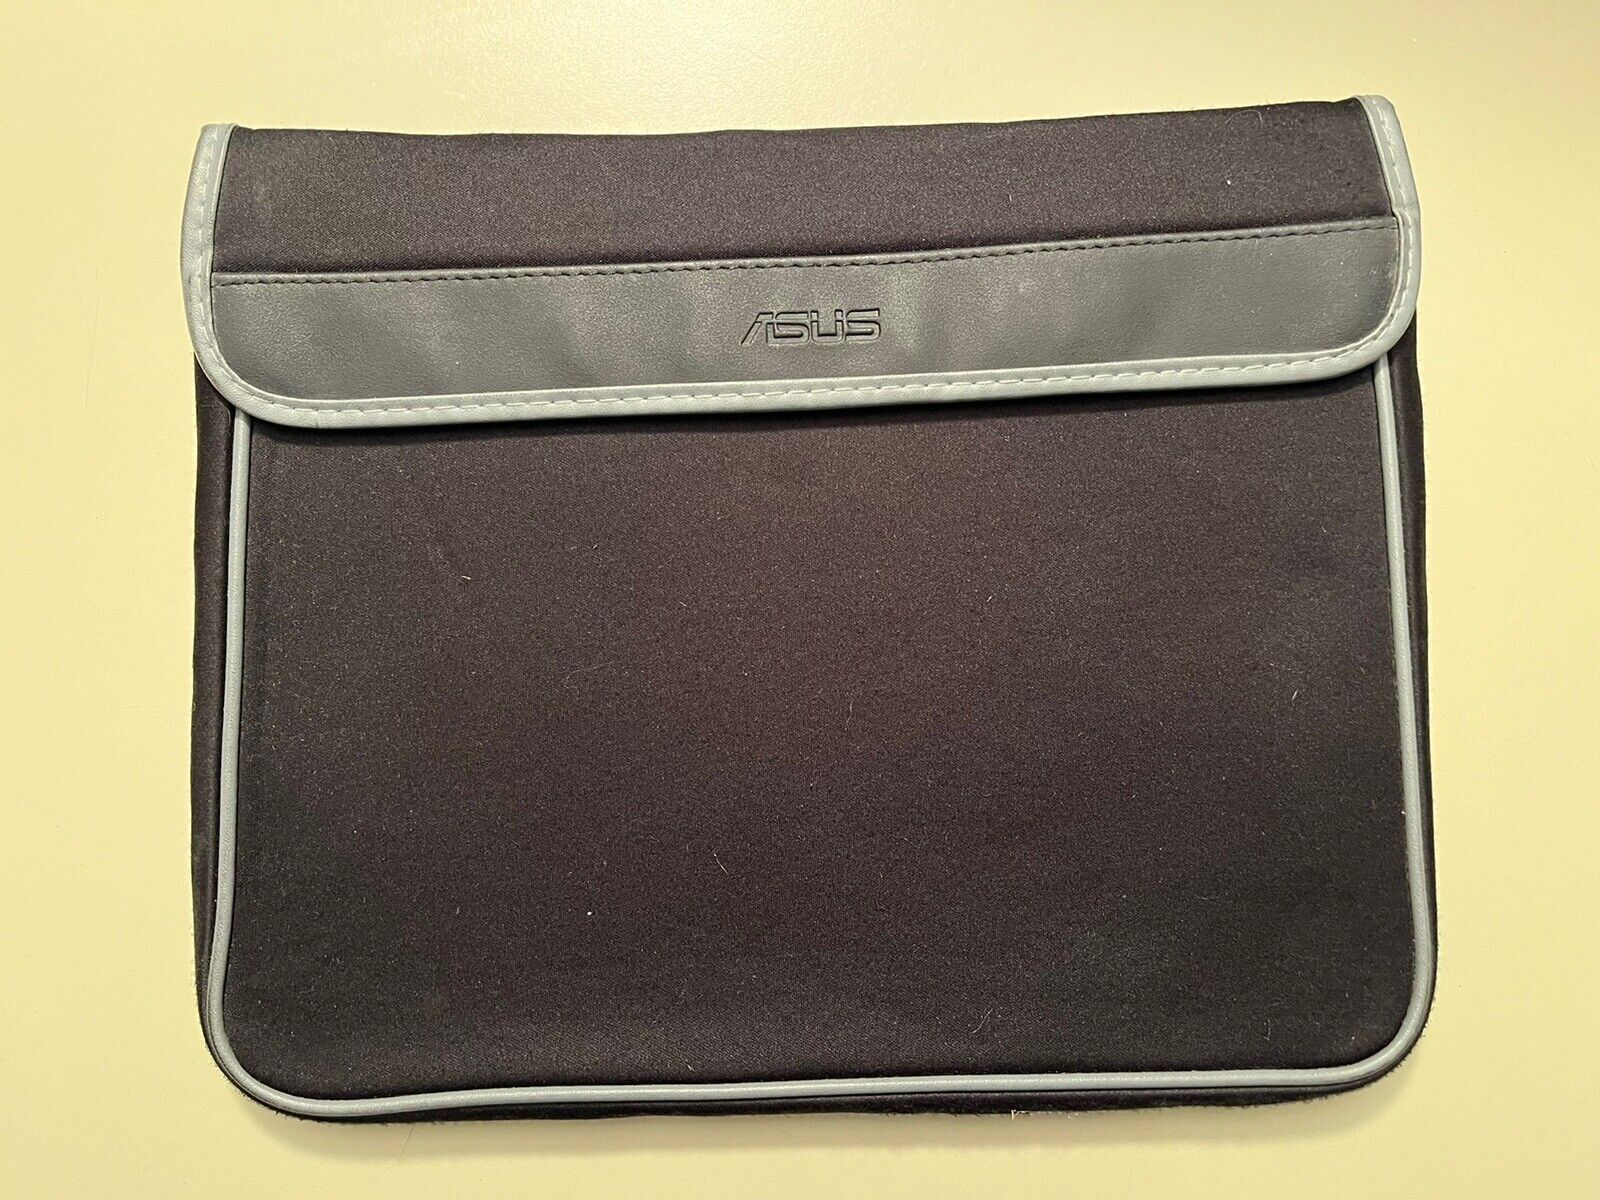 Genuine Asus Neoprene Soft Slim Sleeve Case Cover For 11” Laptops